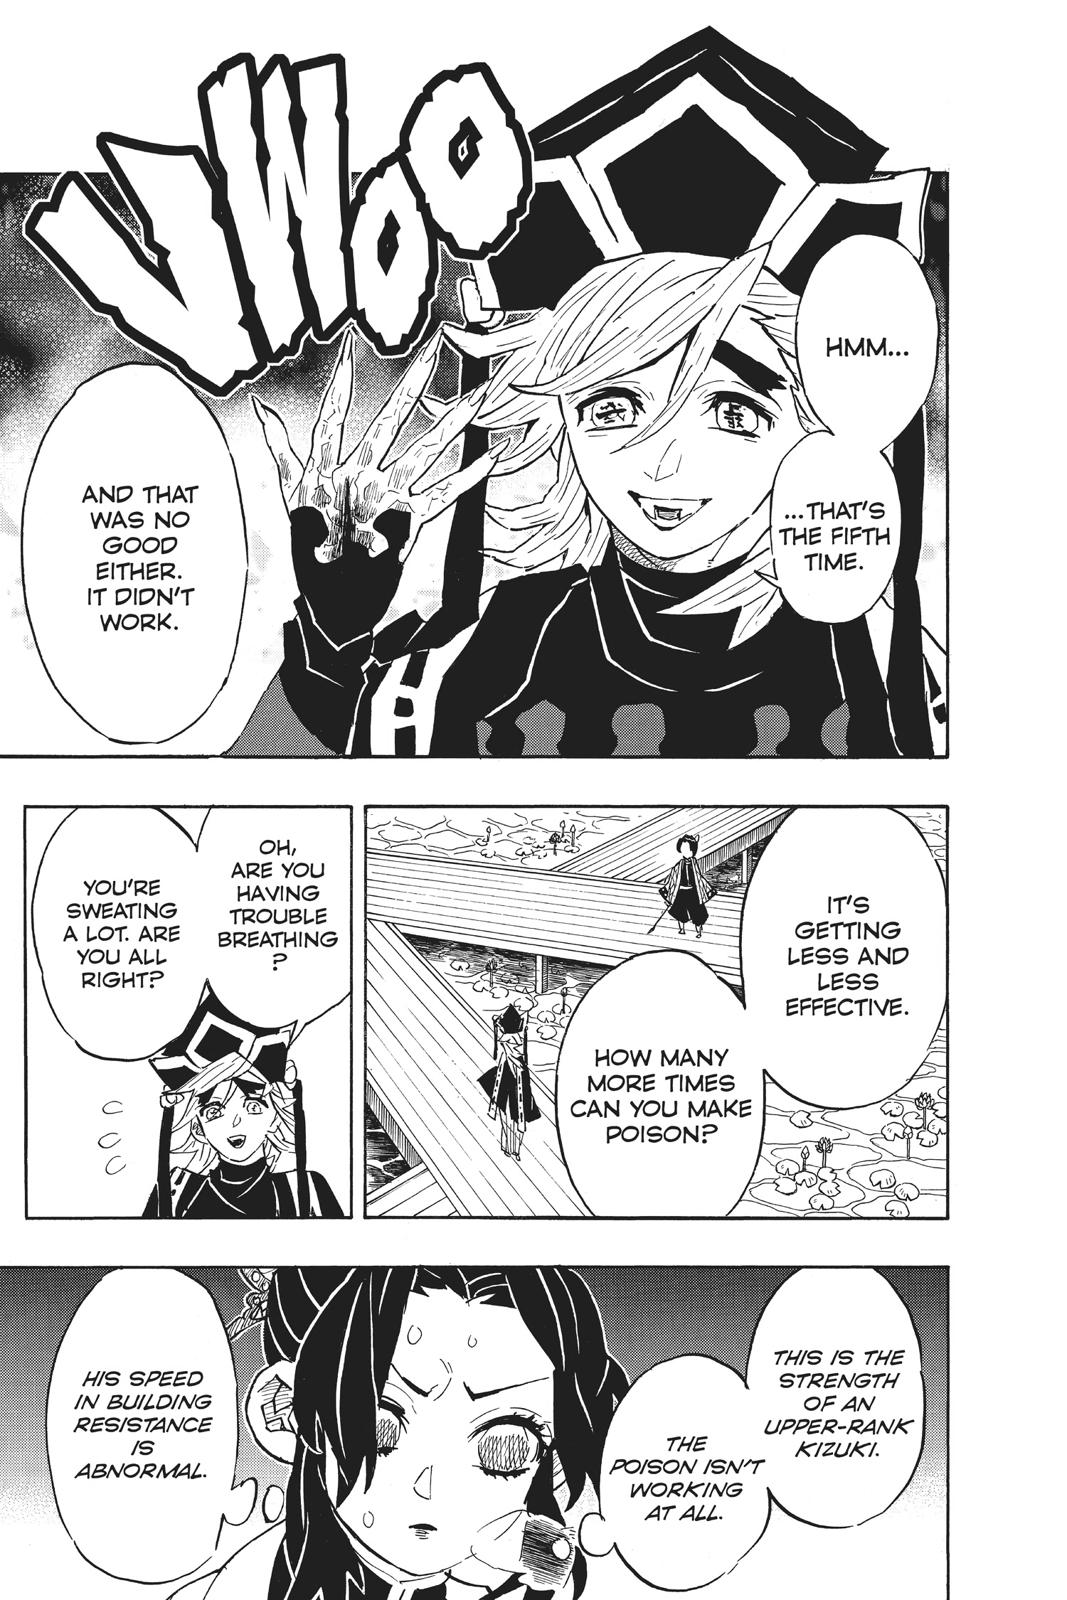 Demon Slayer Manga Manga Chapter - 142 - image 1